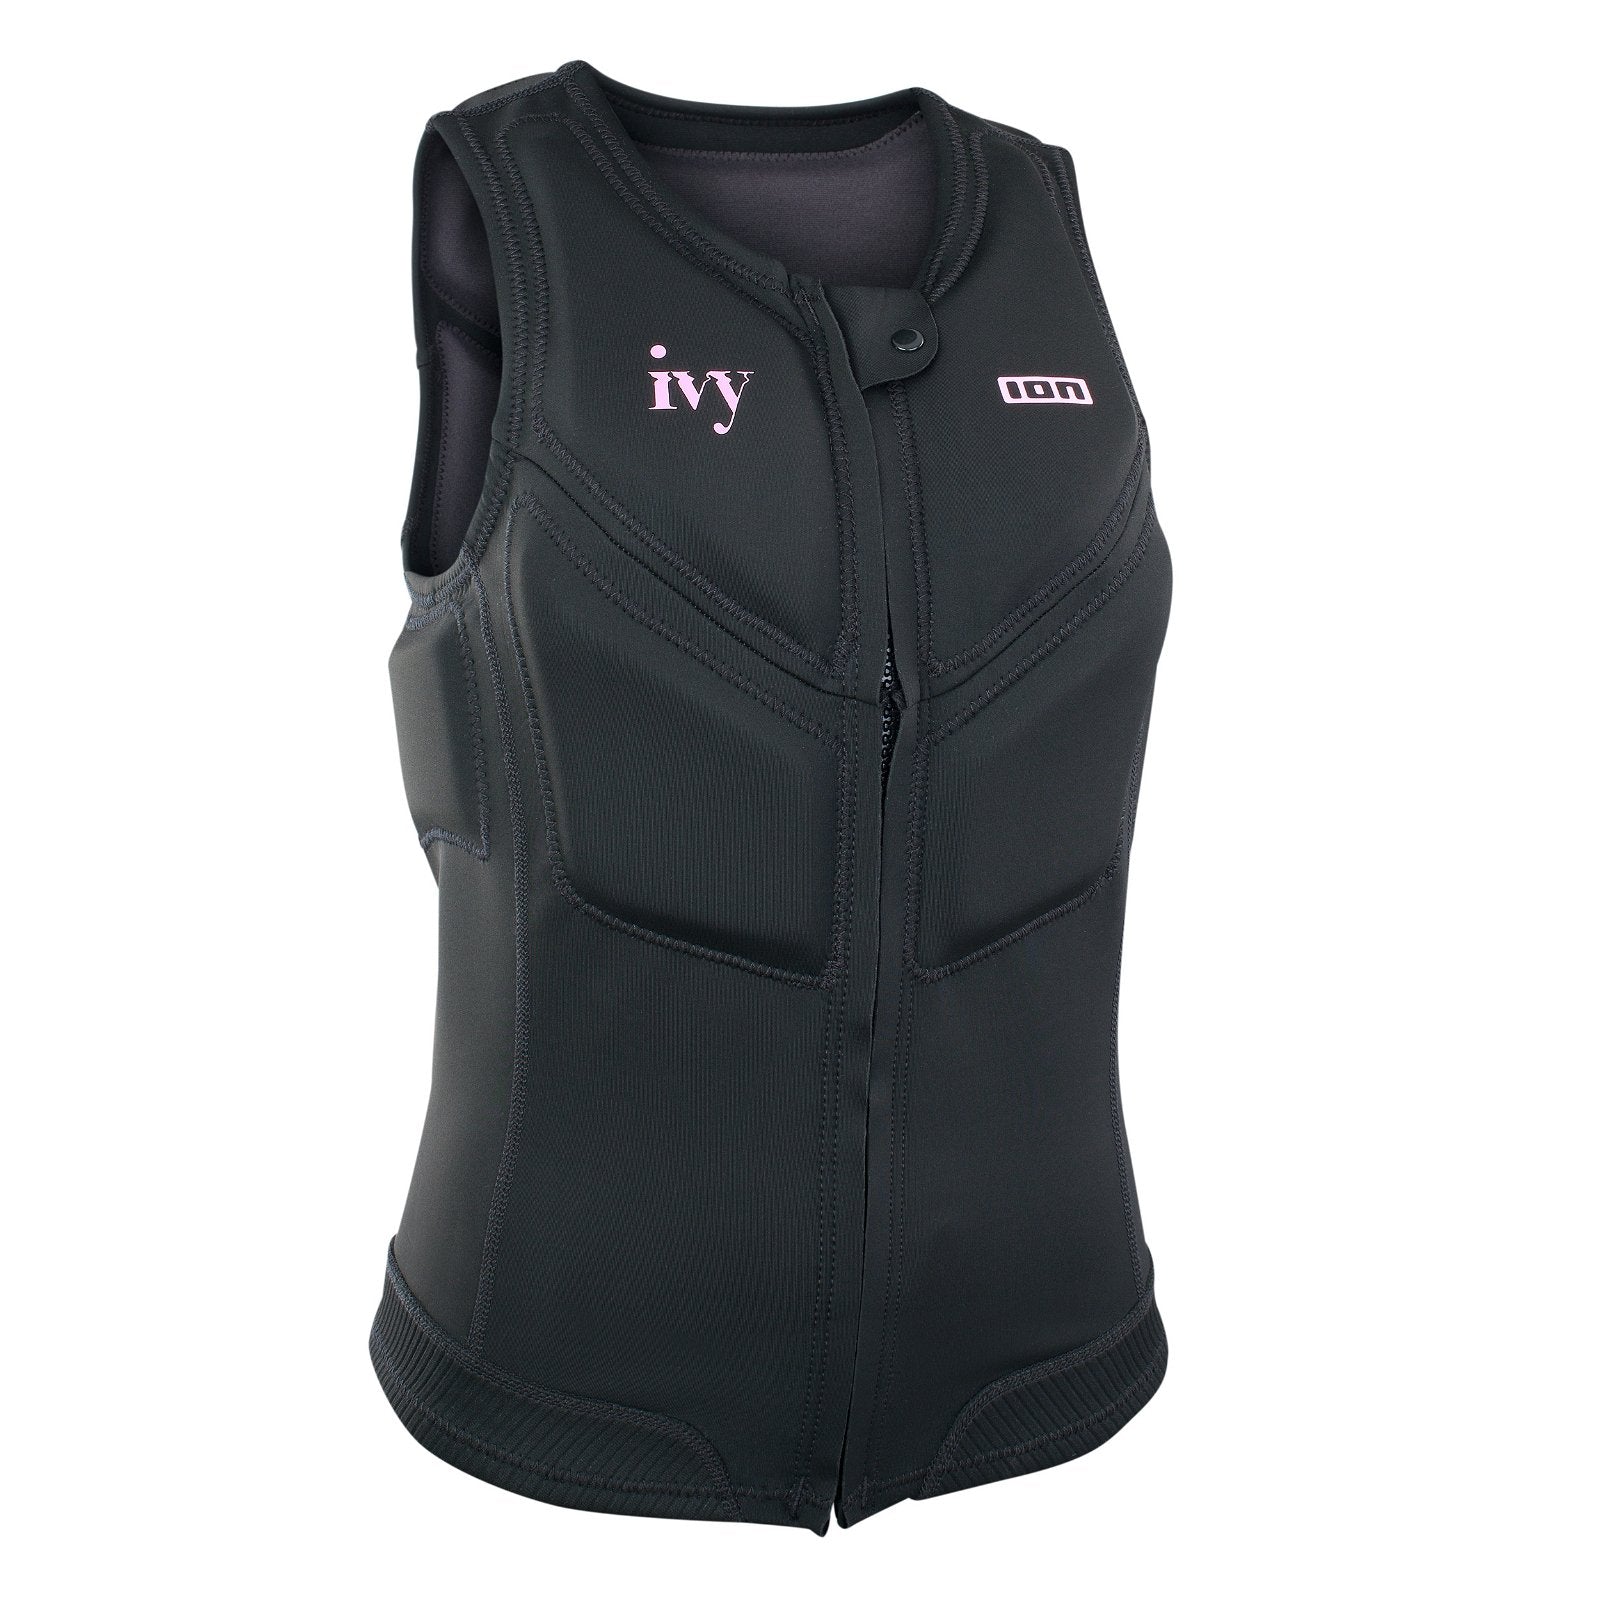 ION Ivy Vest Front Zip 2023-ION Water-L-Black-48213-4169-9010583015583-Surf-store.com